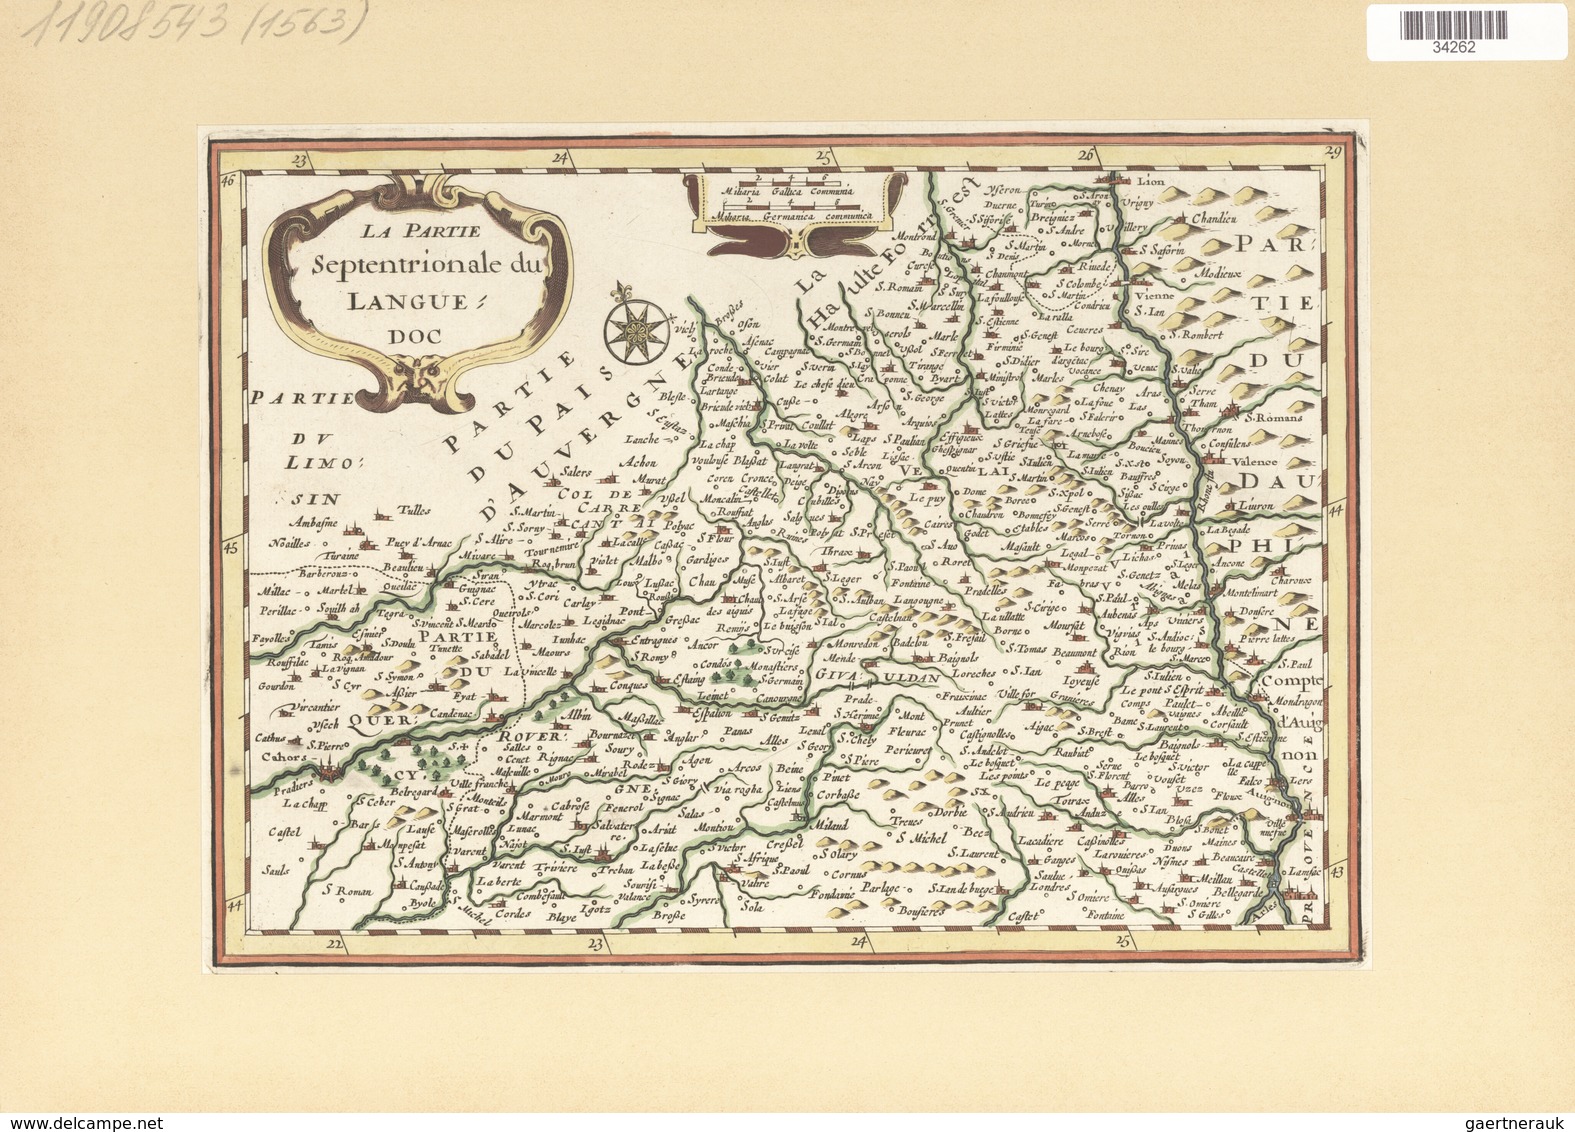 Landkarten Und Stiche: 1734. La Partie Septentrionale Du Languedoc. From The Mercator Atlas Minor Ca - Geographie